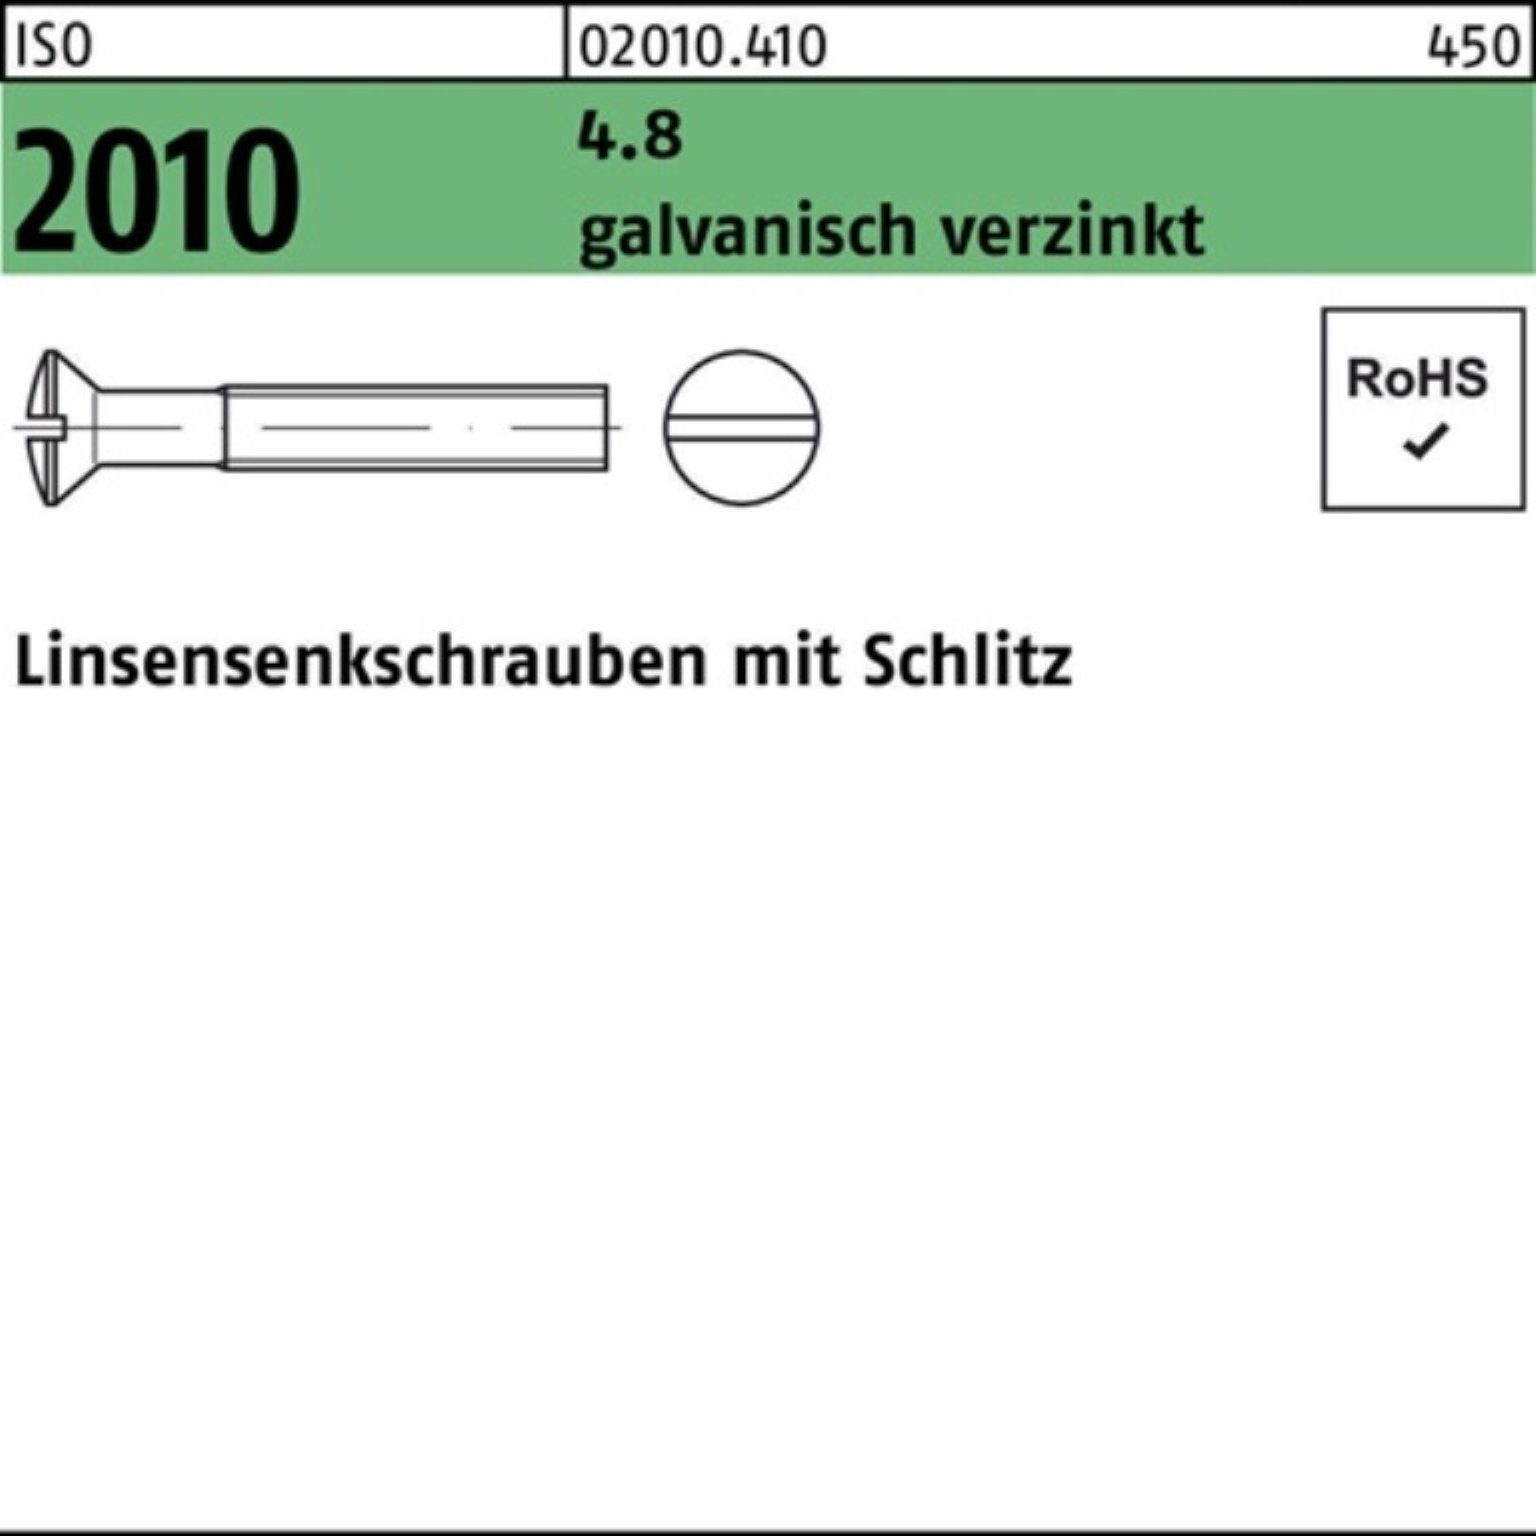 Reyher Linsenschraube 1000er 20 M6x 2010 ISO Pack Schlitz 4.8 galv.verz. Linsensenkschraube